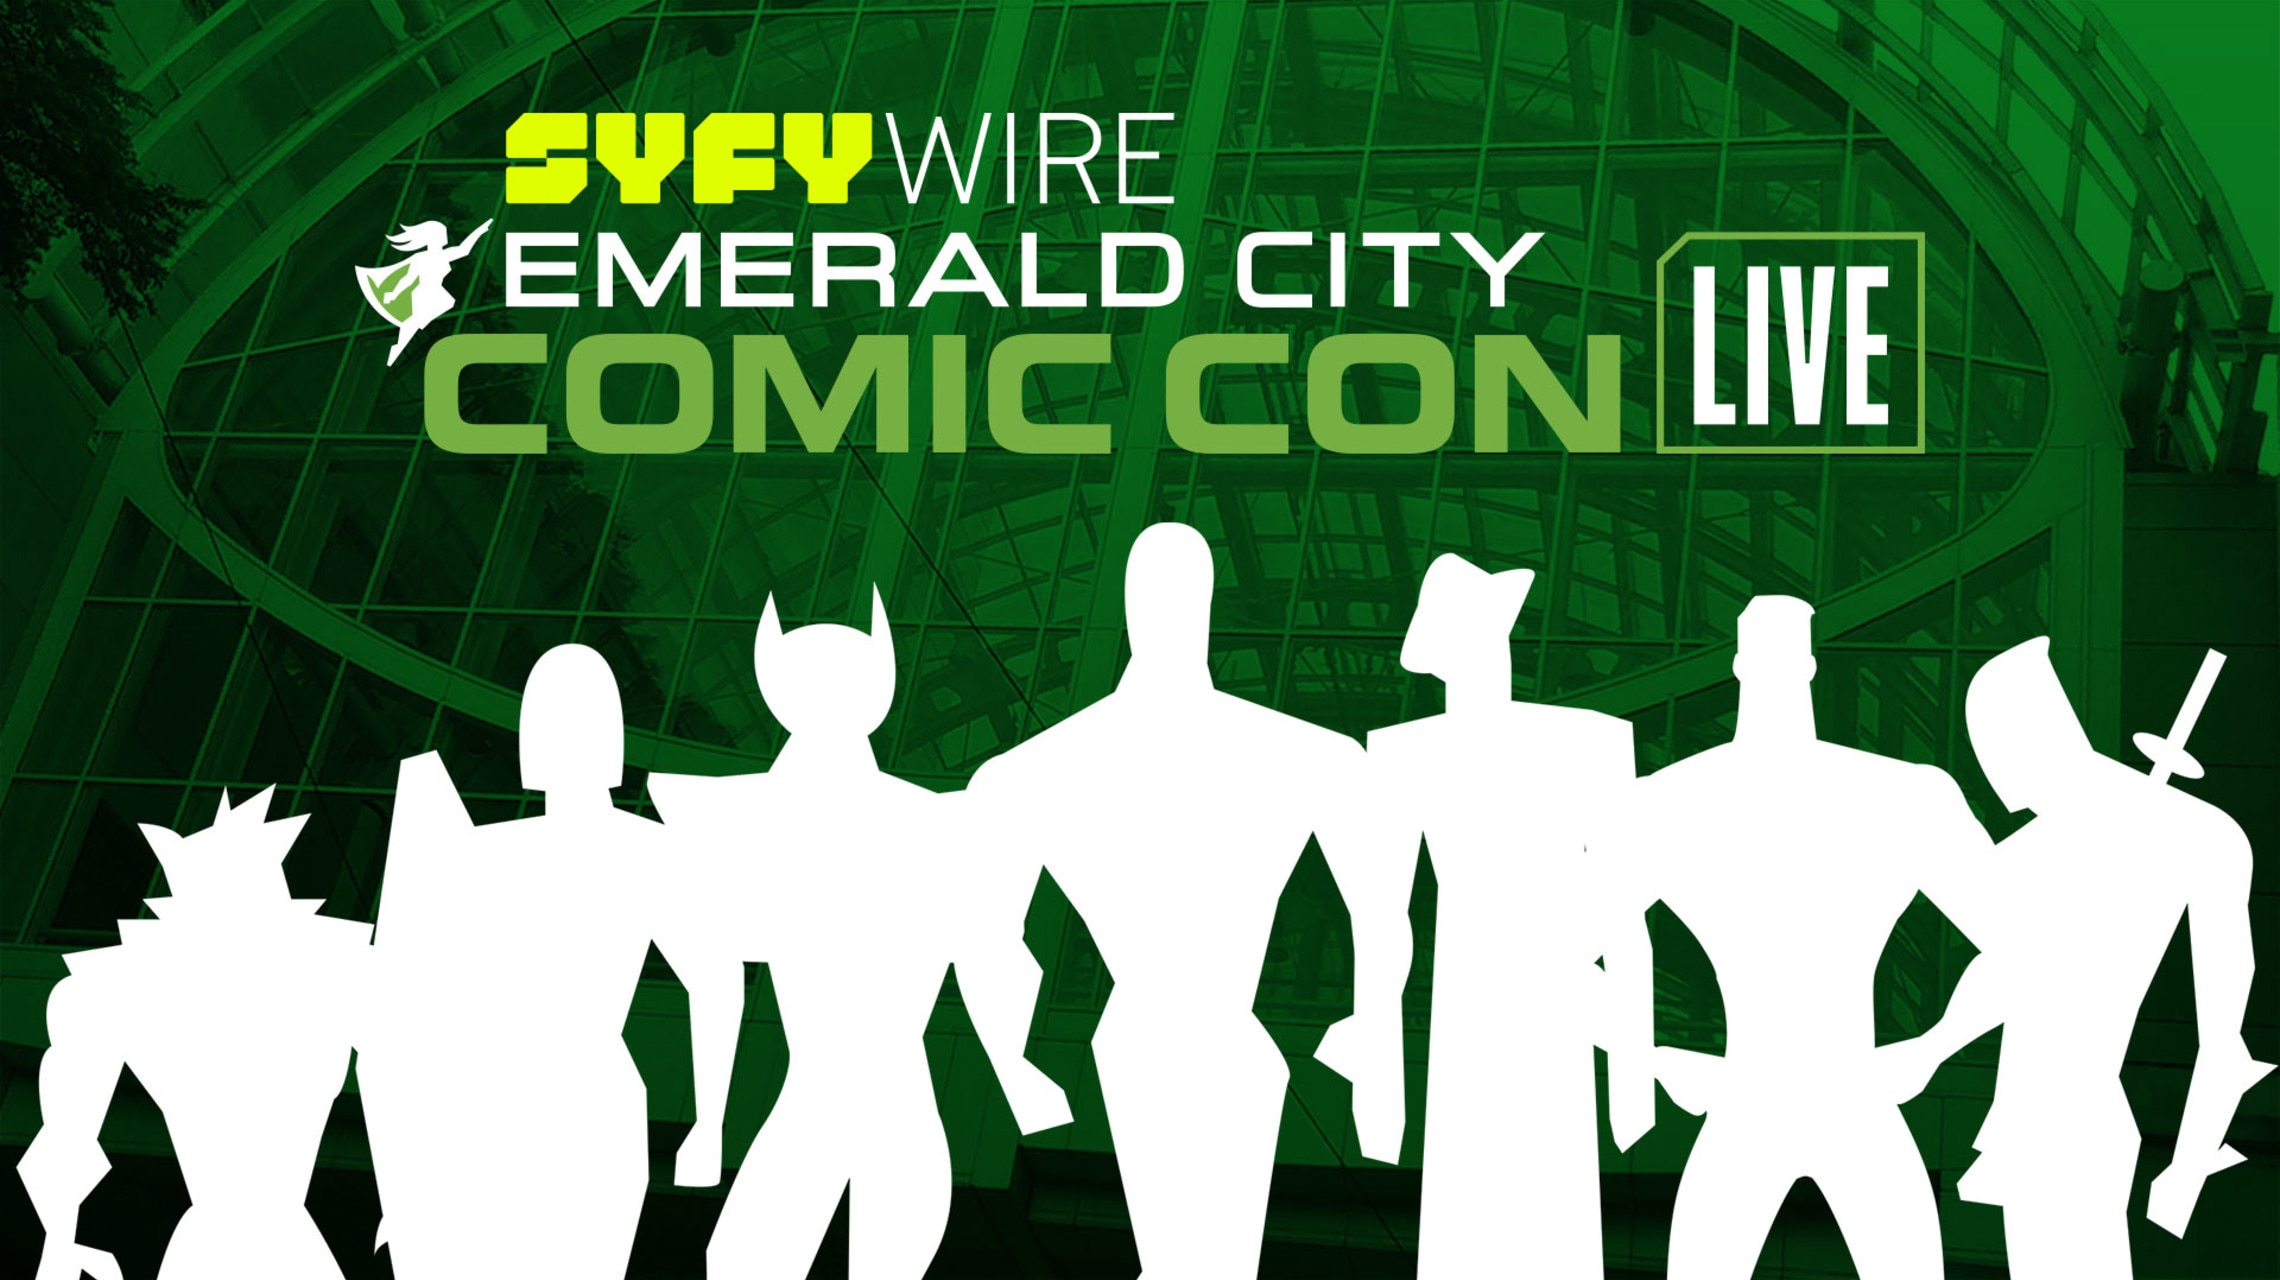 Emerald City Comic Con Live Stage SYFY WIRE